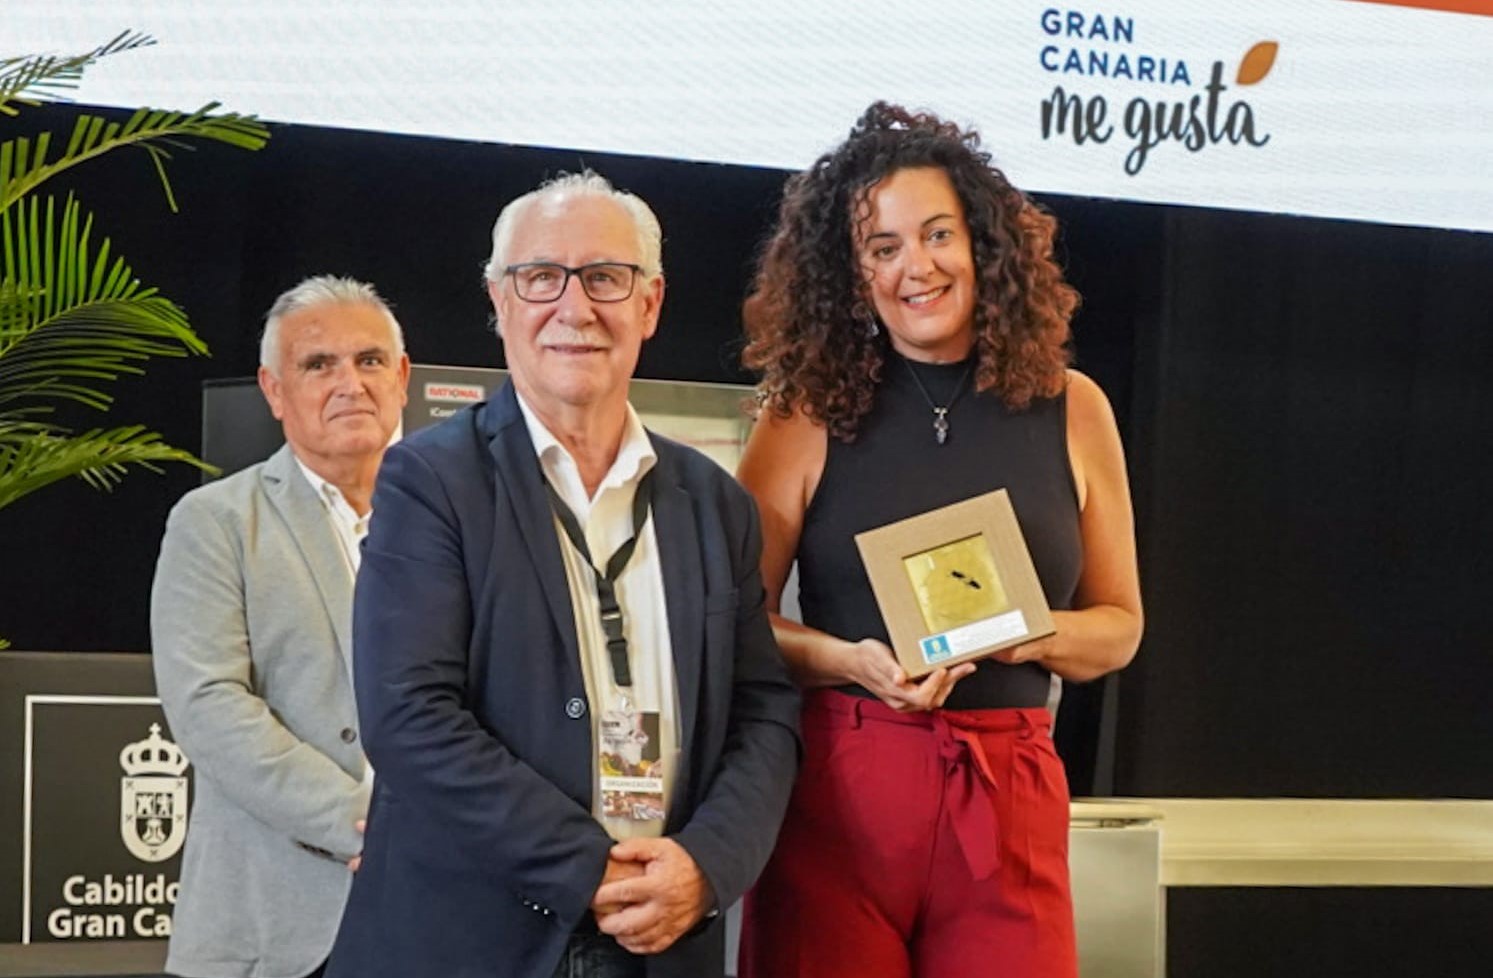 Concurso Oficial de Mieles de Gran Canaria / CanariasNoticias.es 